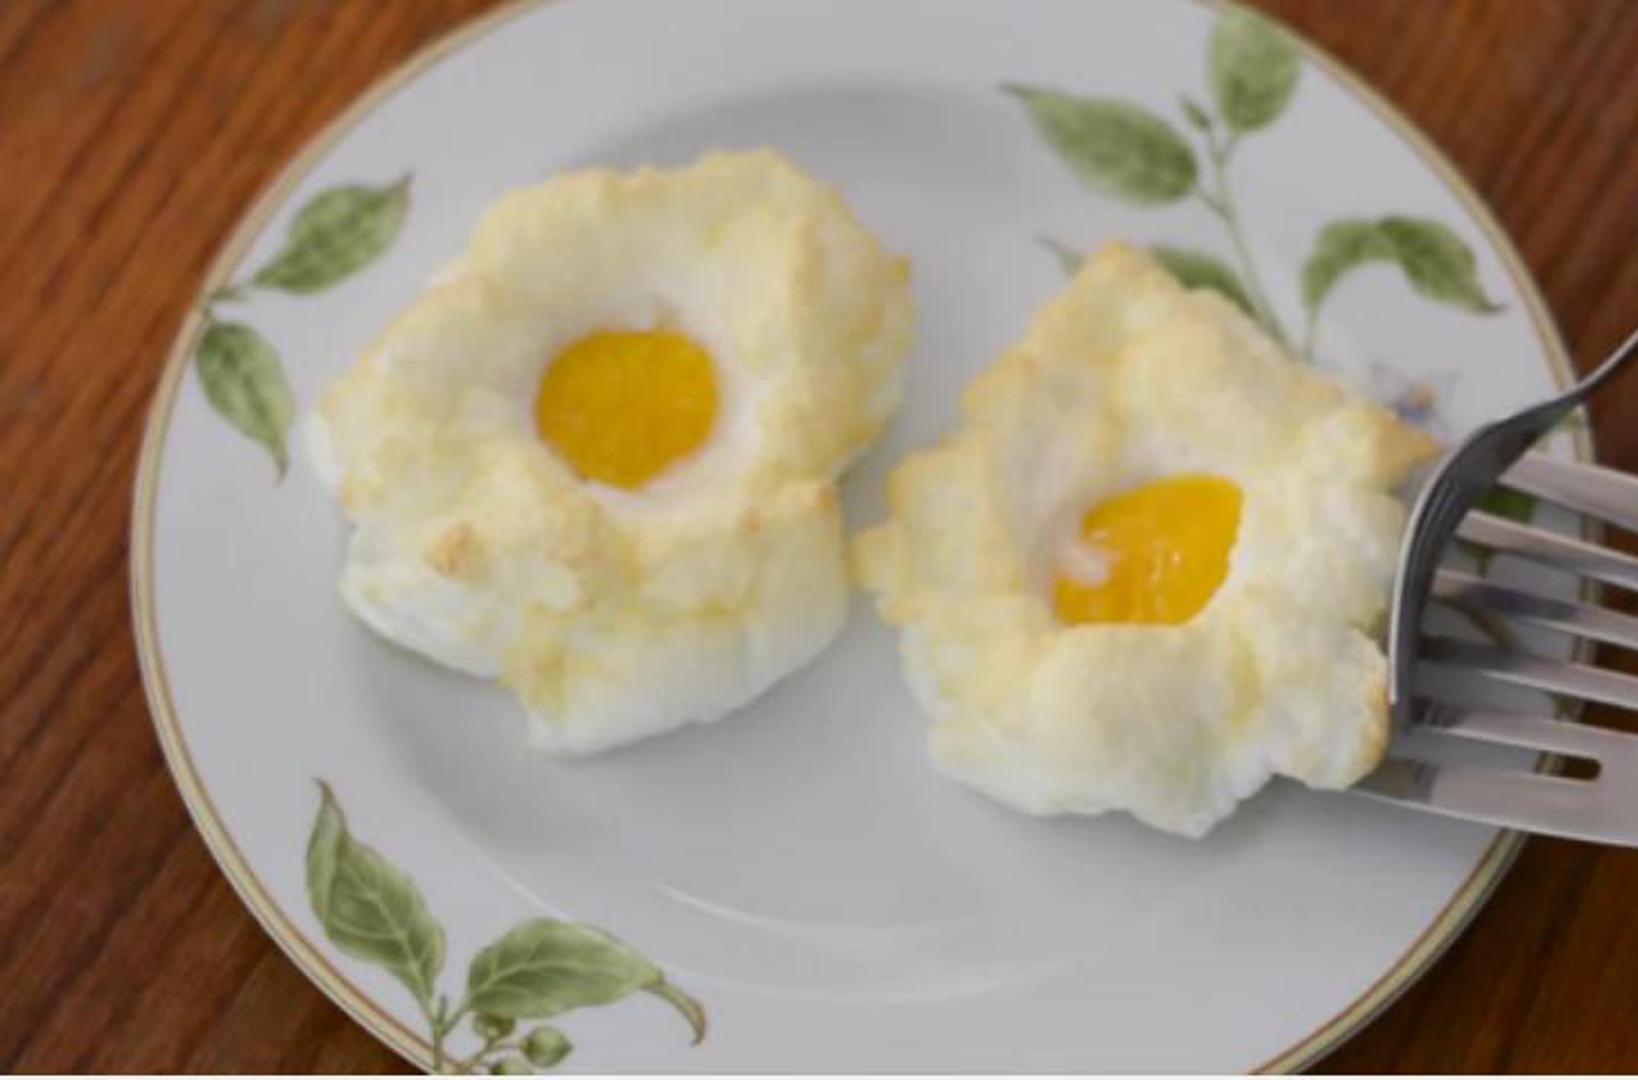 Kuhar Shay Cooper savjetuje kako napraviti savršena poširana jaja...

